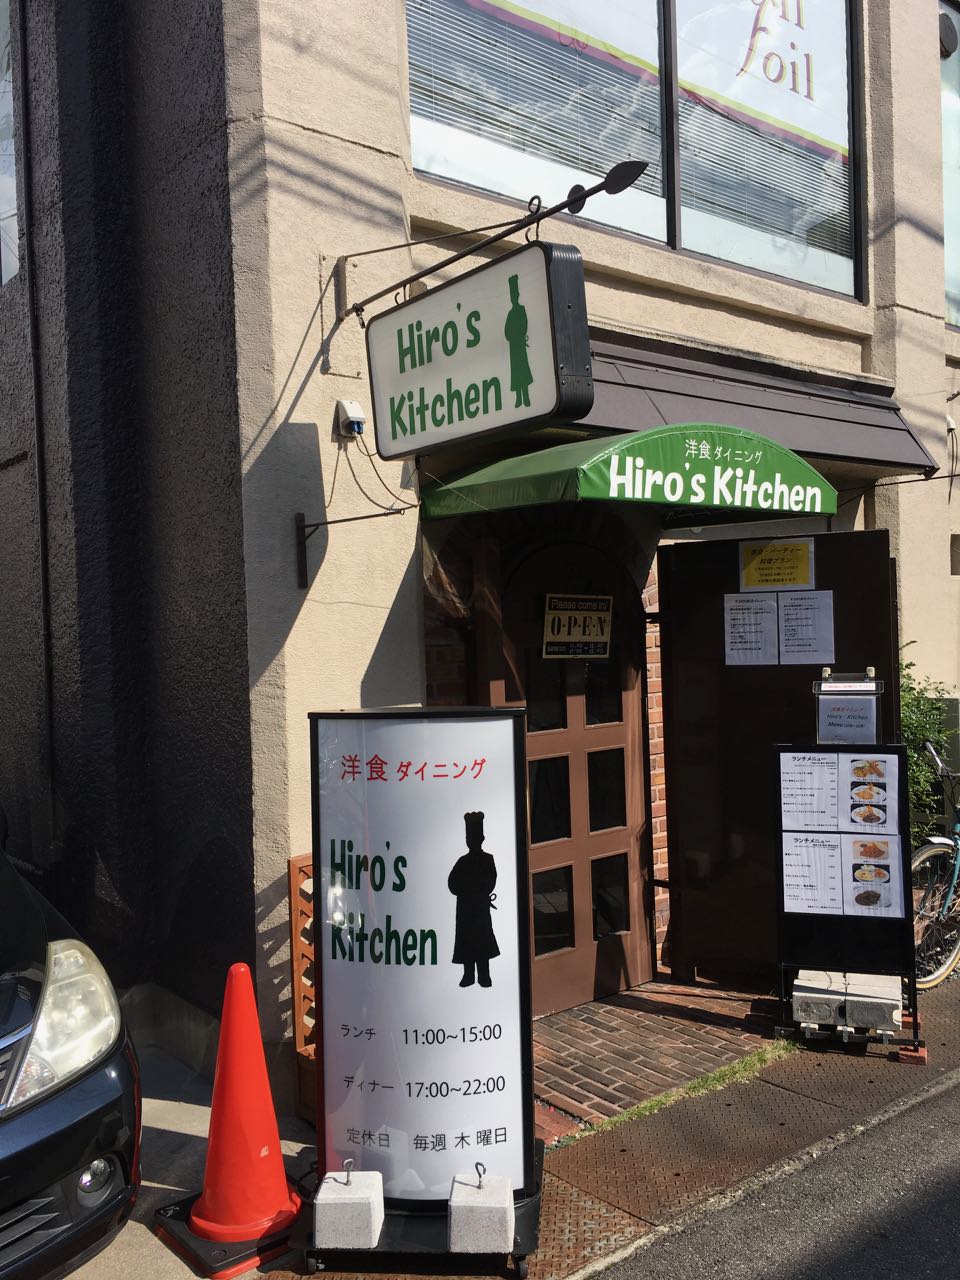 石橋の洋食店ヒロズキッチン(Hiro’s kitchen)でランチ